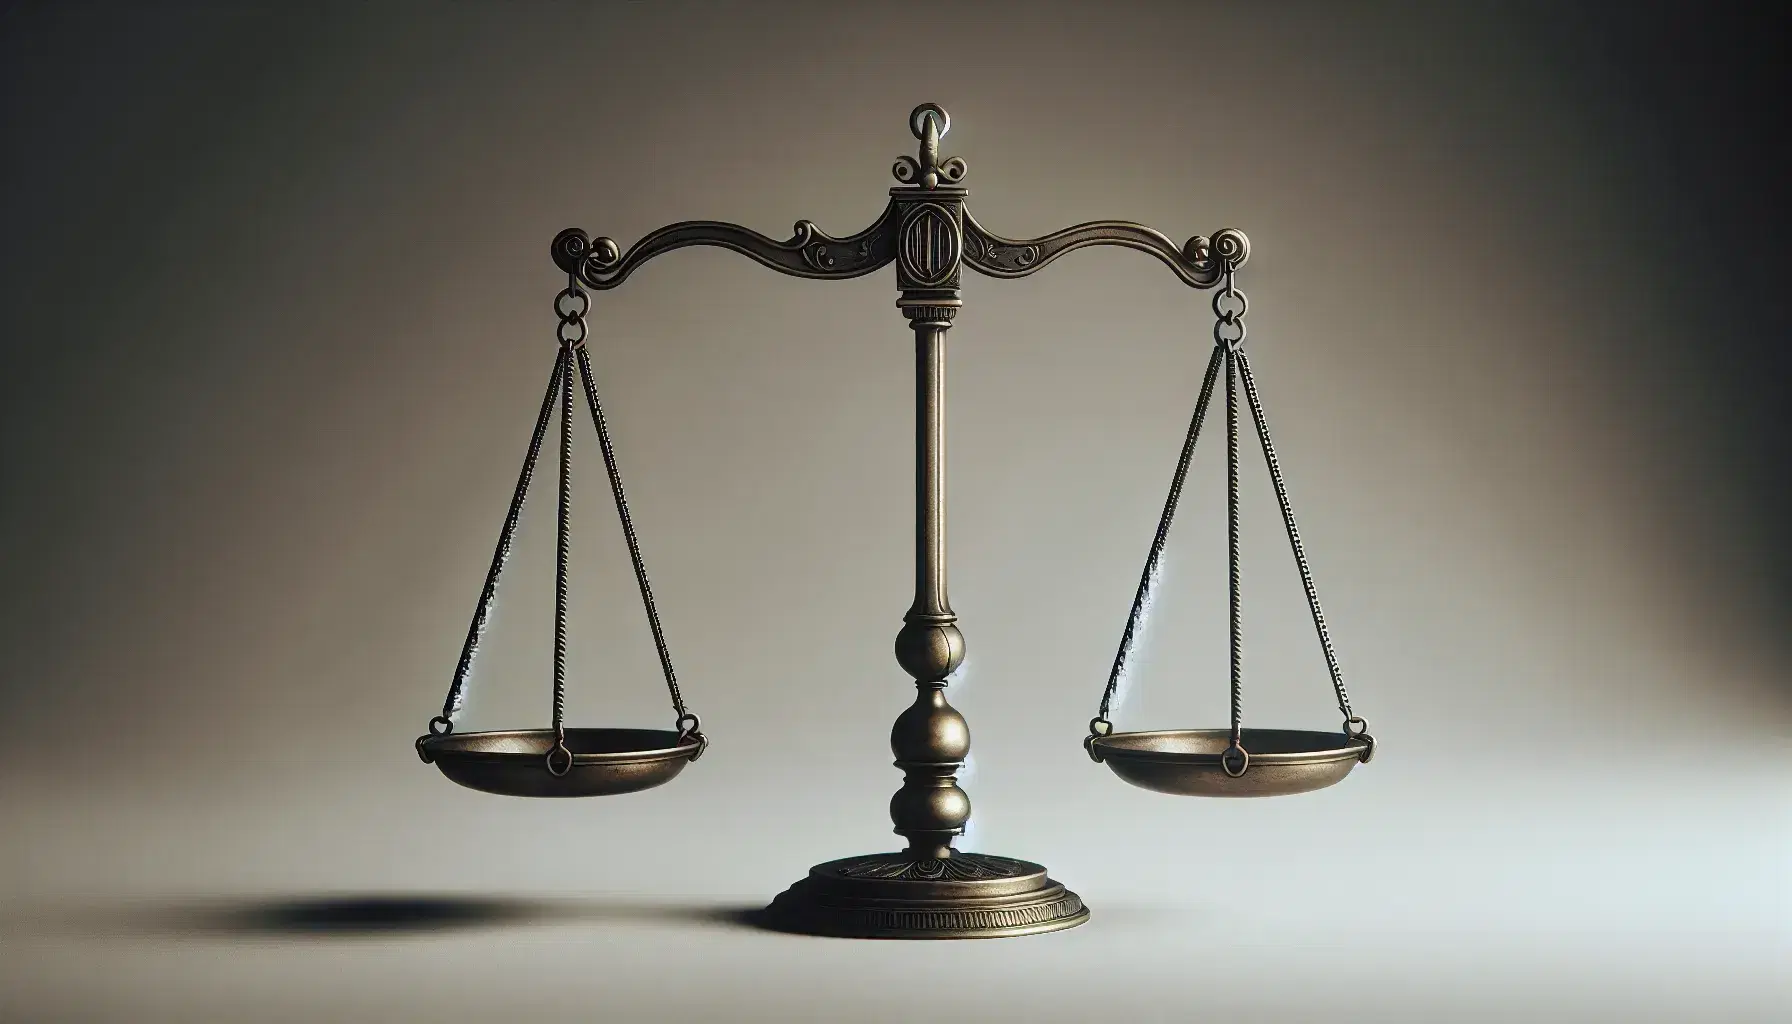 Bilancia della giustizia antica in equilibrio, con piatti identici vuoti e barra orizzontale su sfondo neutro.